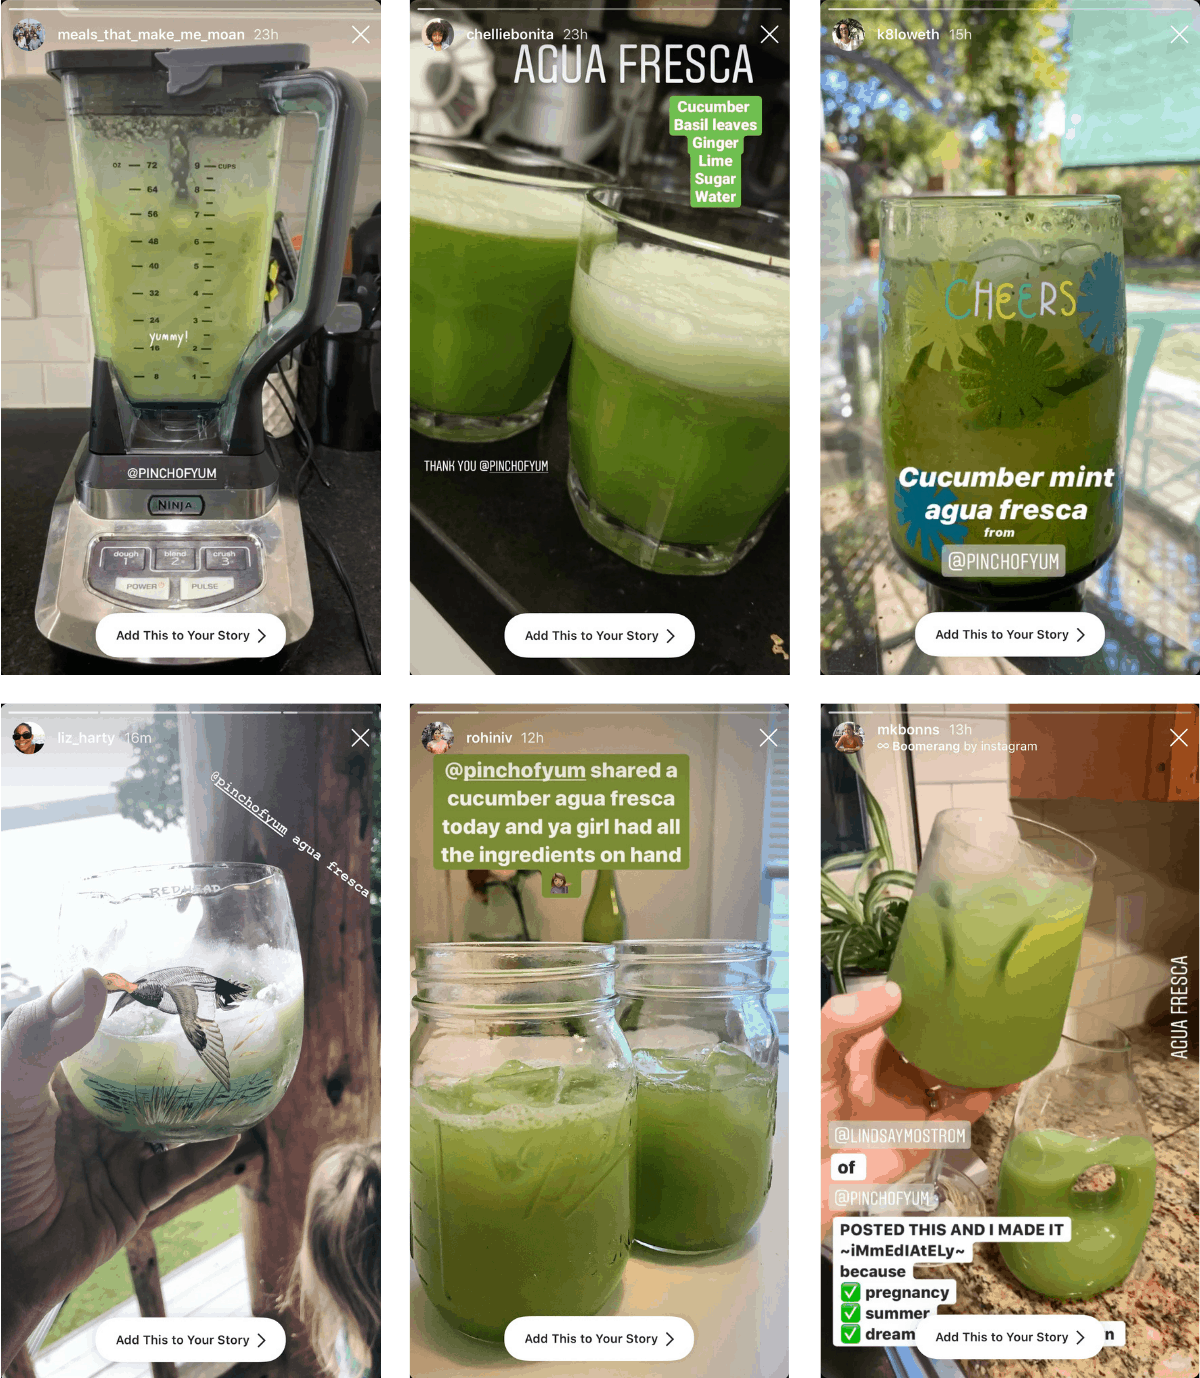 Instagram images of Cucumber Agua Fresca.